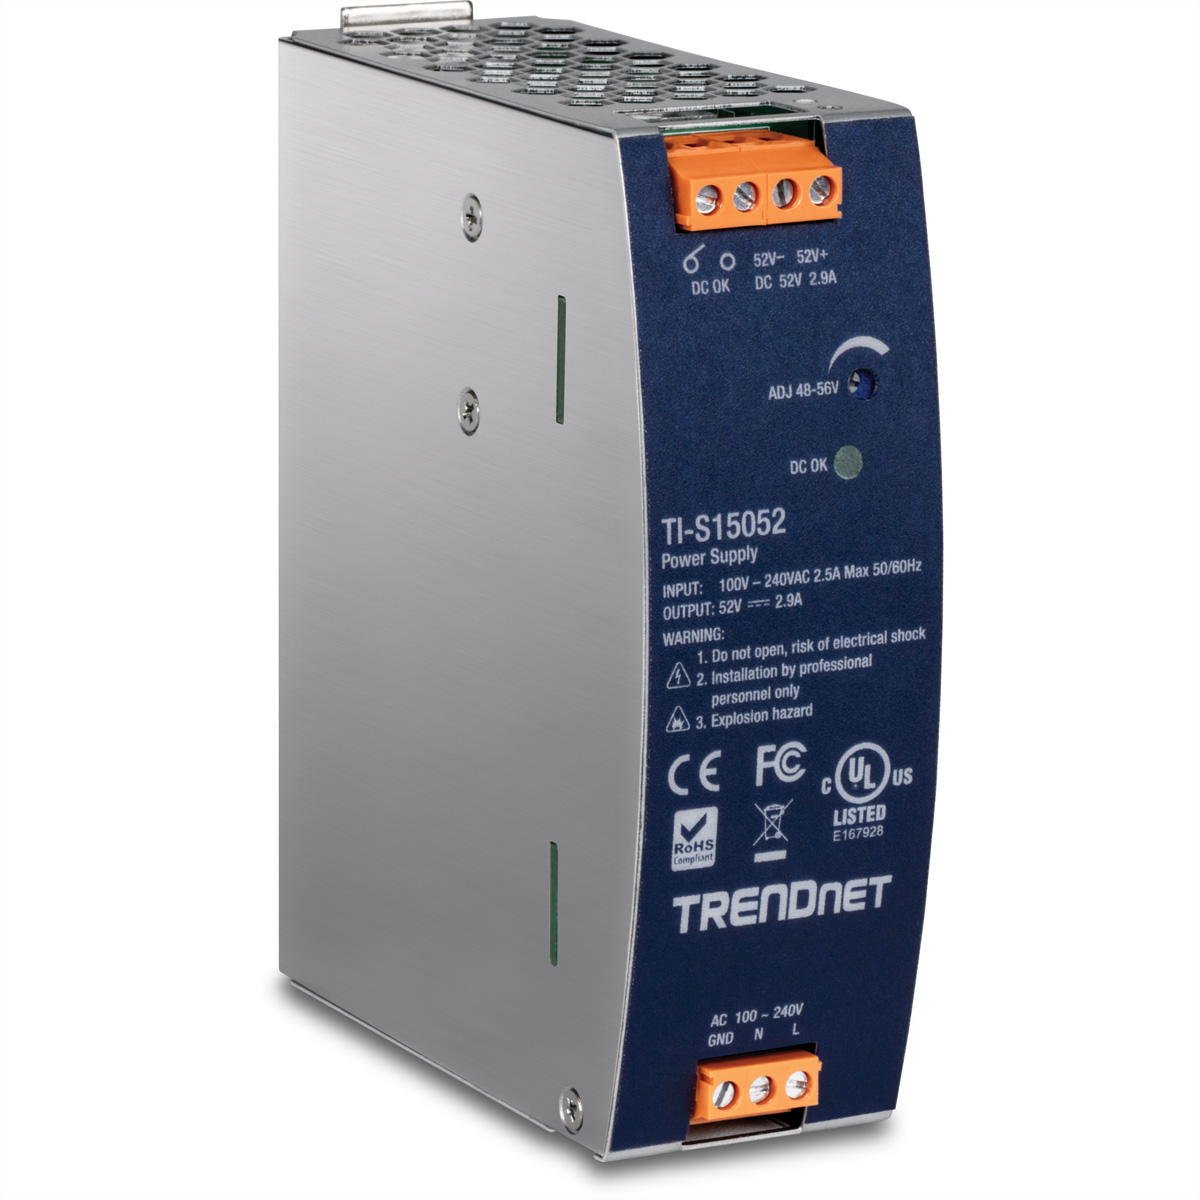 TRENDNET TI-S15052 DIN-Rail Power Supply Netzteil